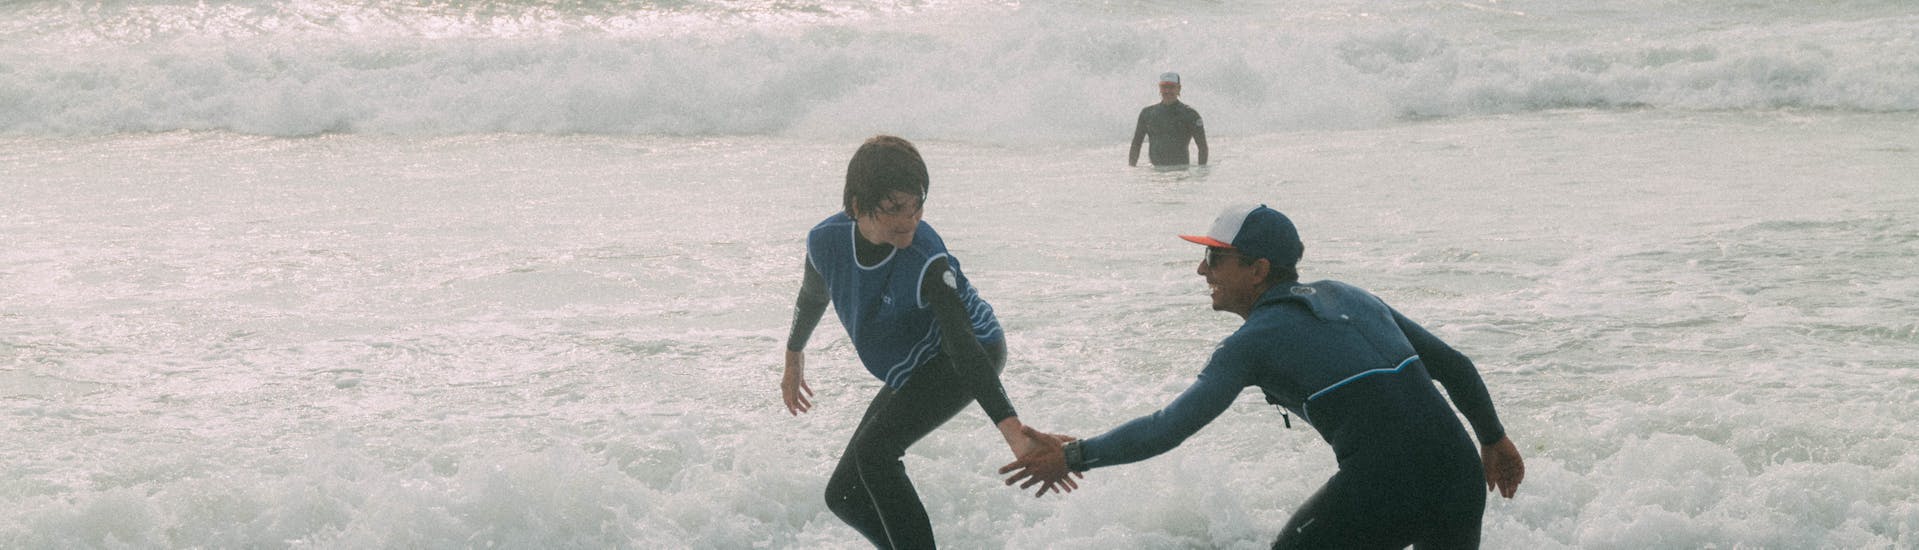 Lezioni di surf a Seignosse da 6 anni per tutti i livelli.